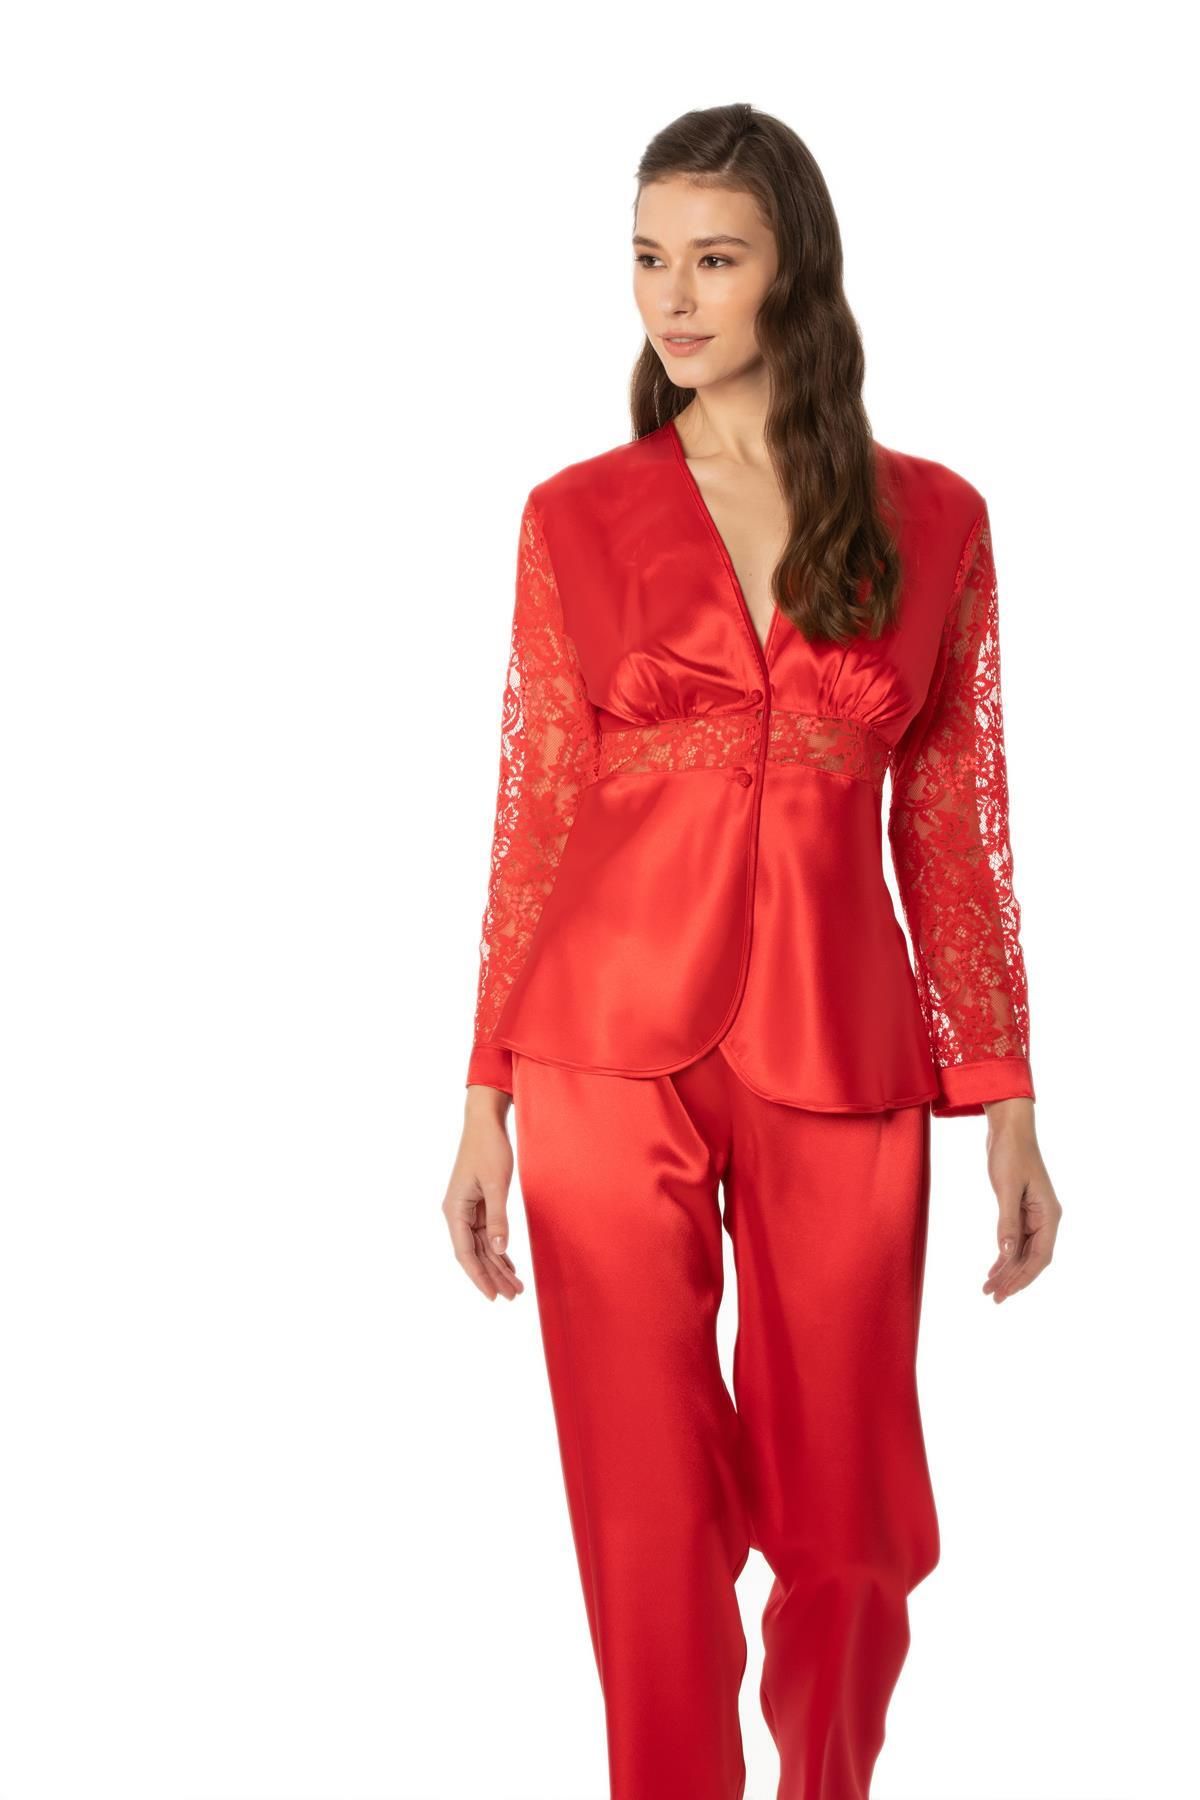 Pierre Cardin Kadın Kırmızı Saten Dantelli Pijama Takımı - 1121